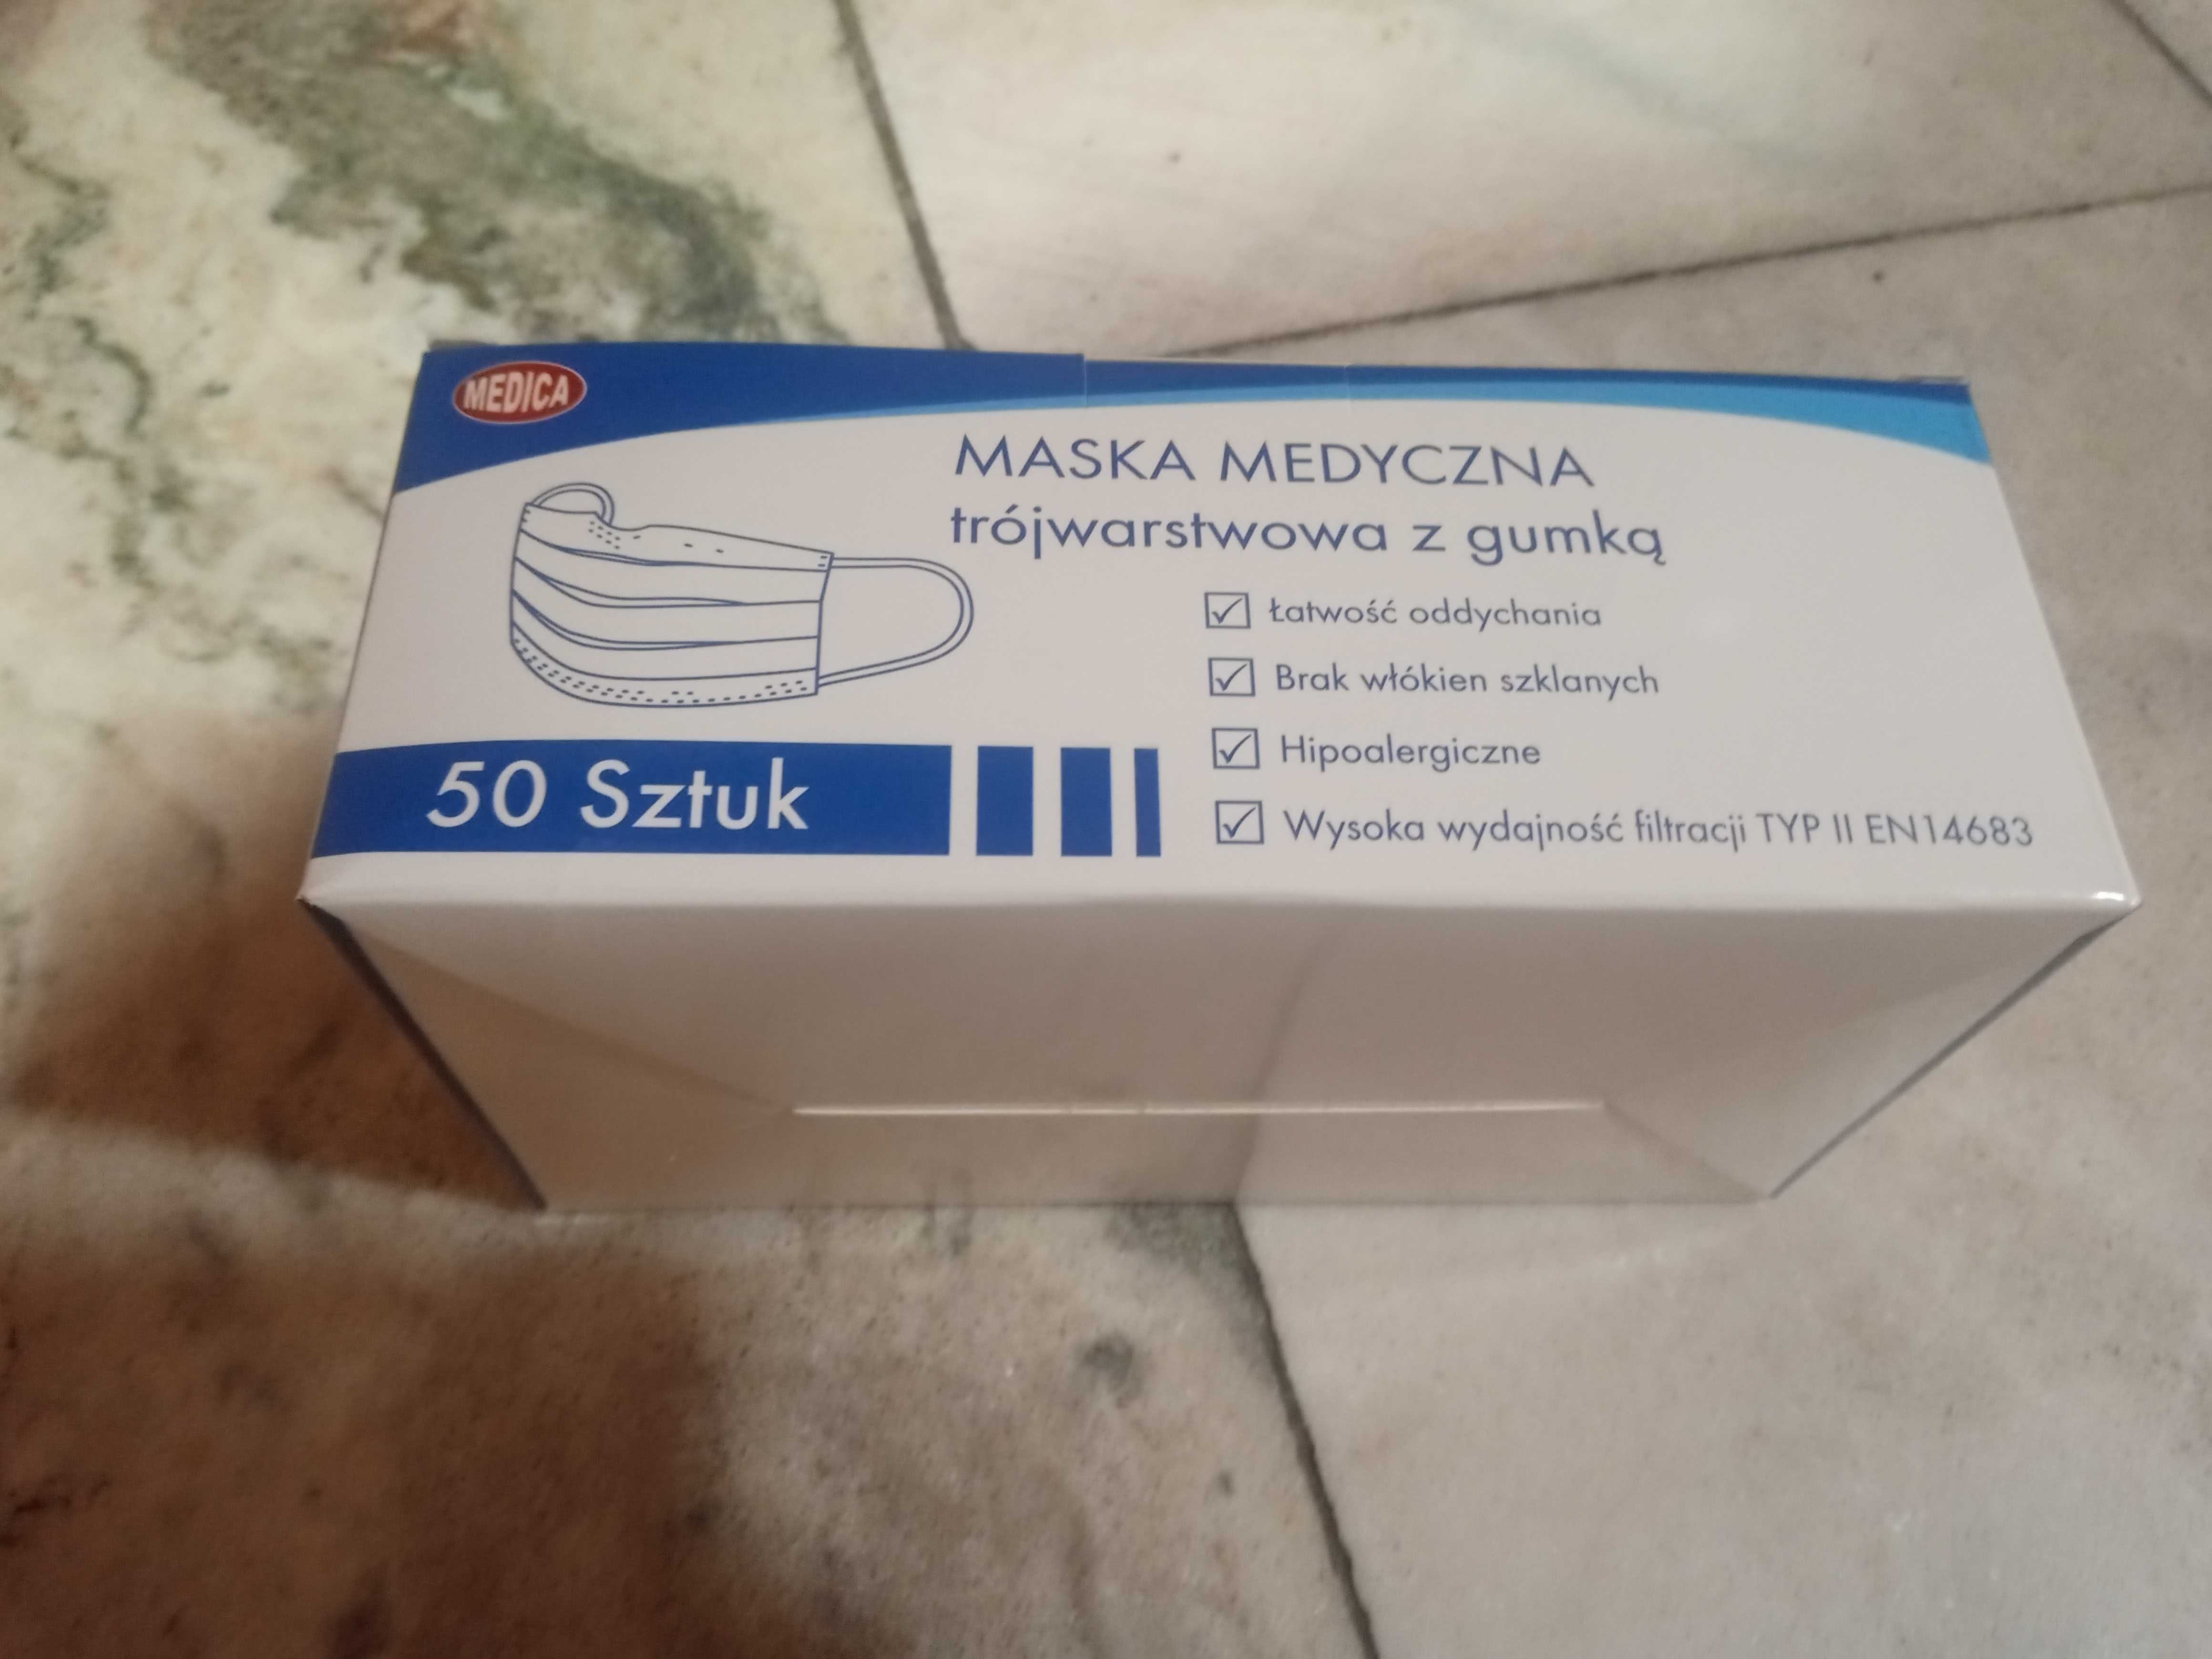 Maseczki medyczne Medica trójwarstwowe z gumką, nowe, 2000 szt.